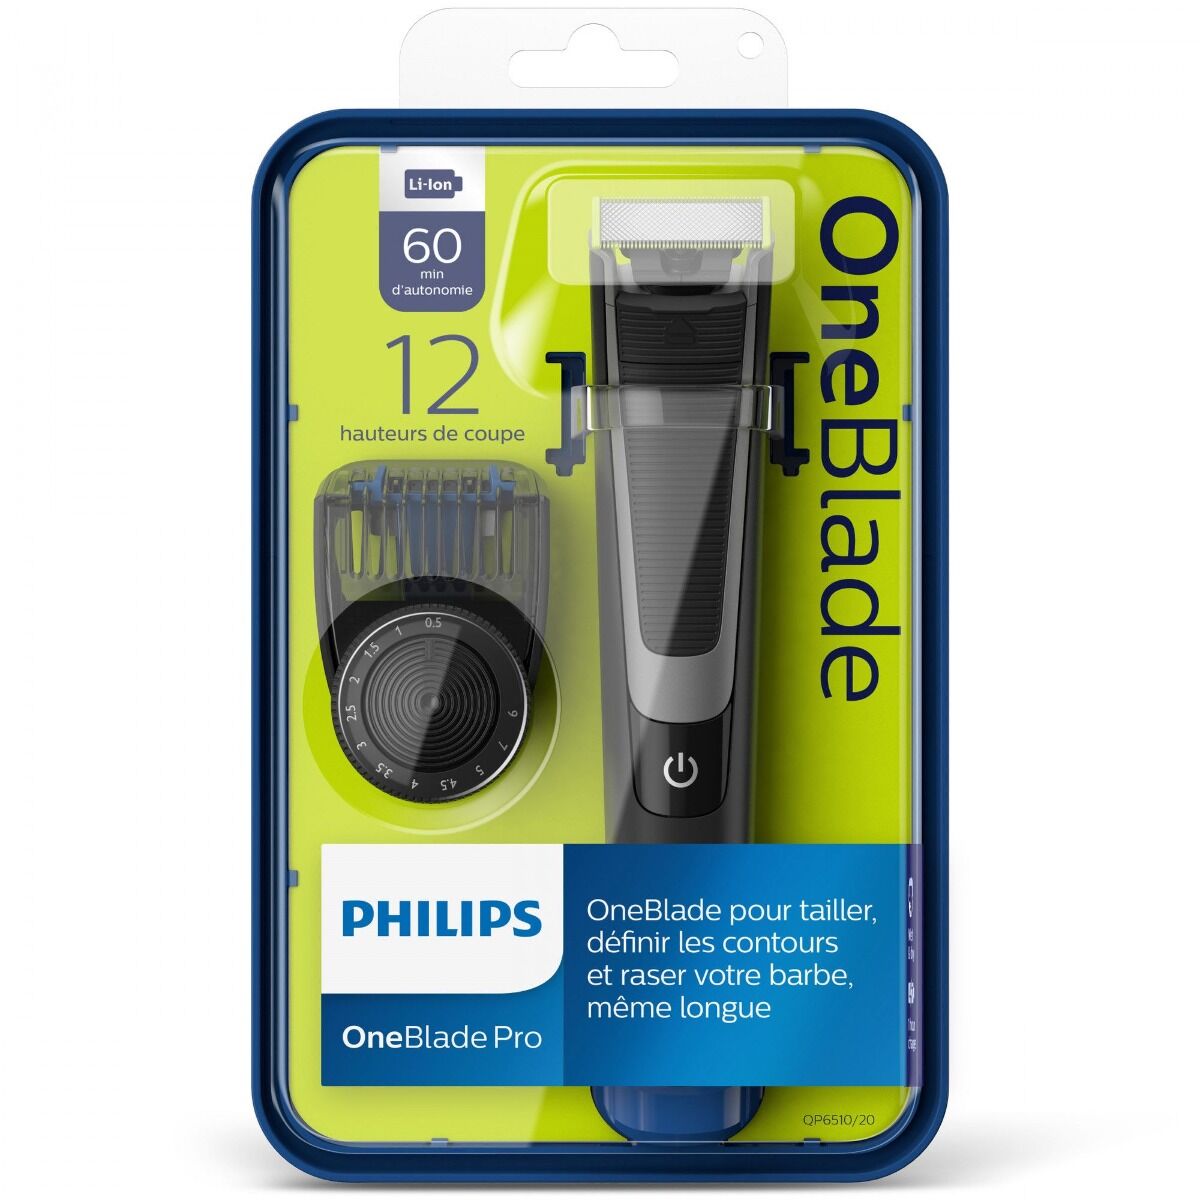 One blade QP6510/20 Philips, maner anti-alunecare, lavabil, incarcare rapida